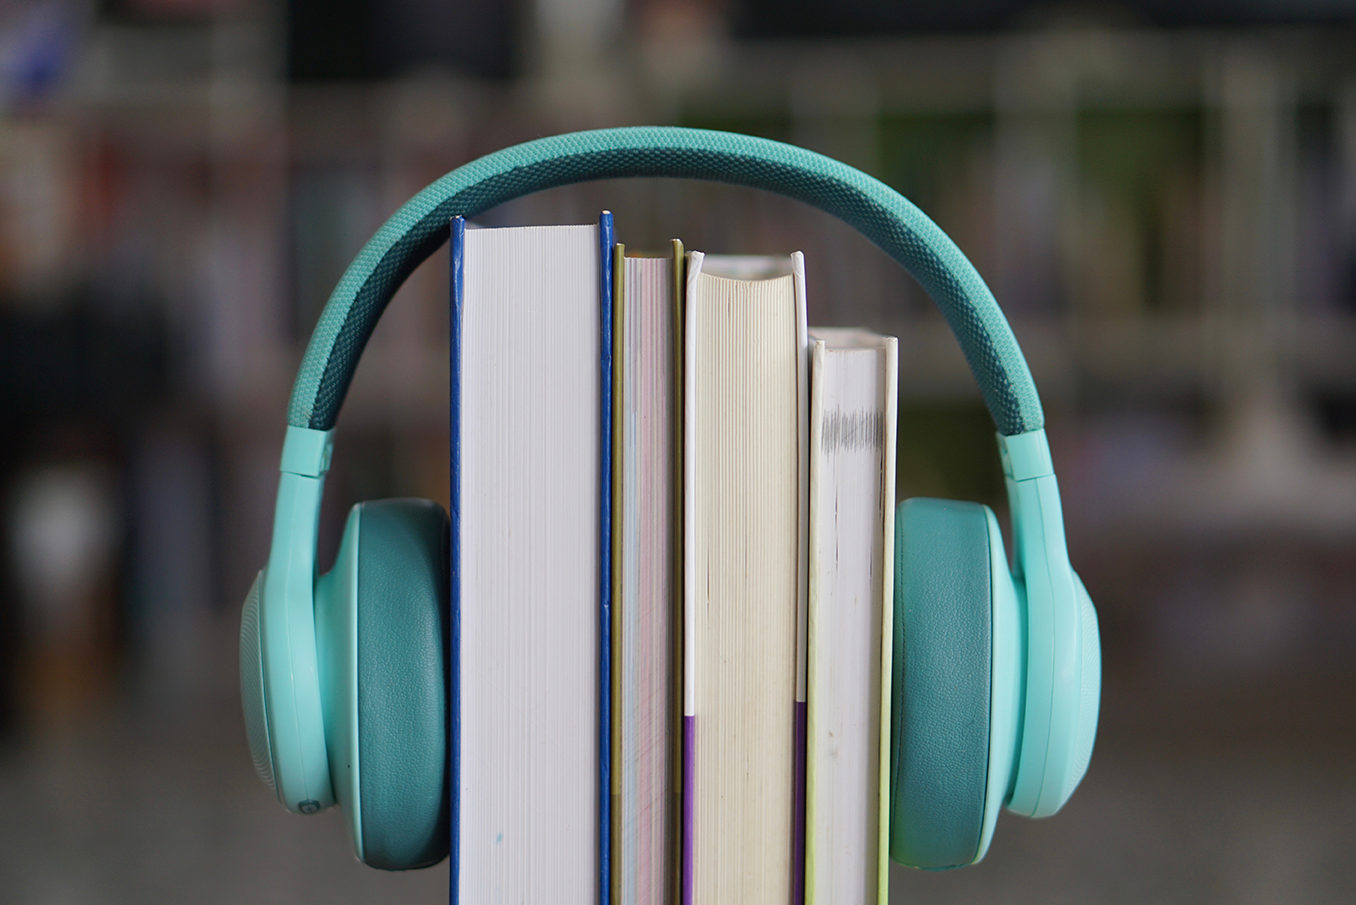 Libros con audífonos, una revolución